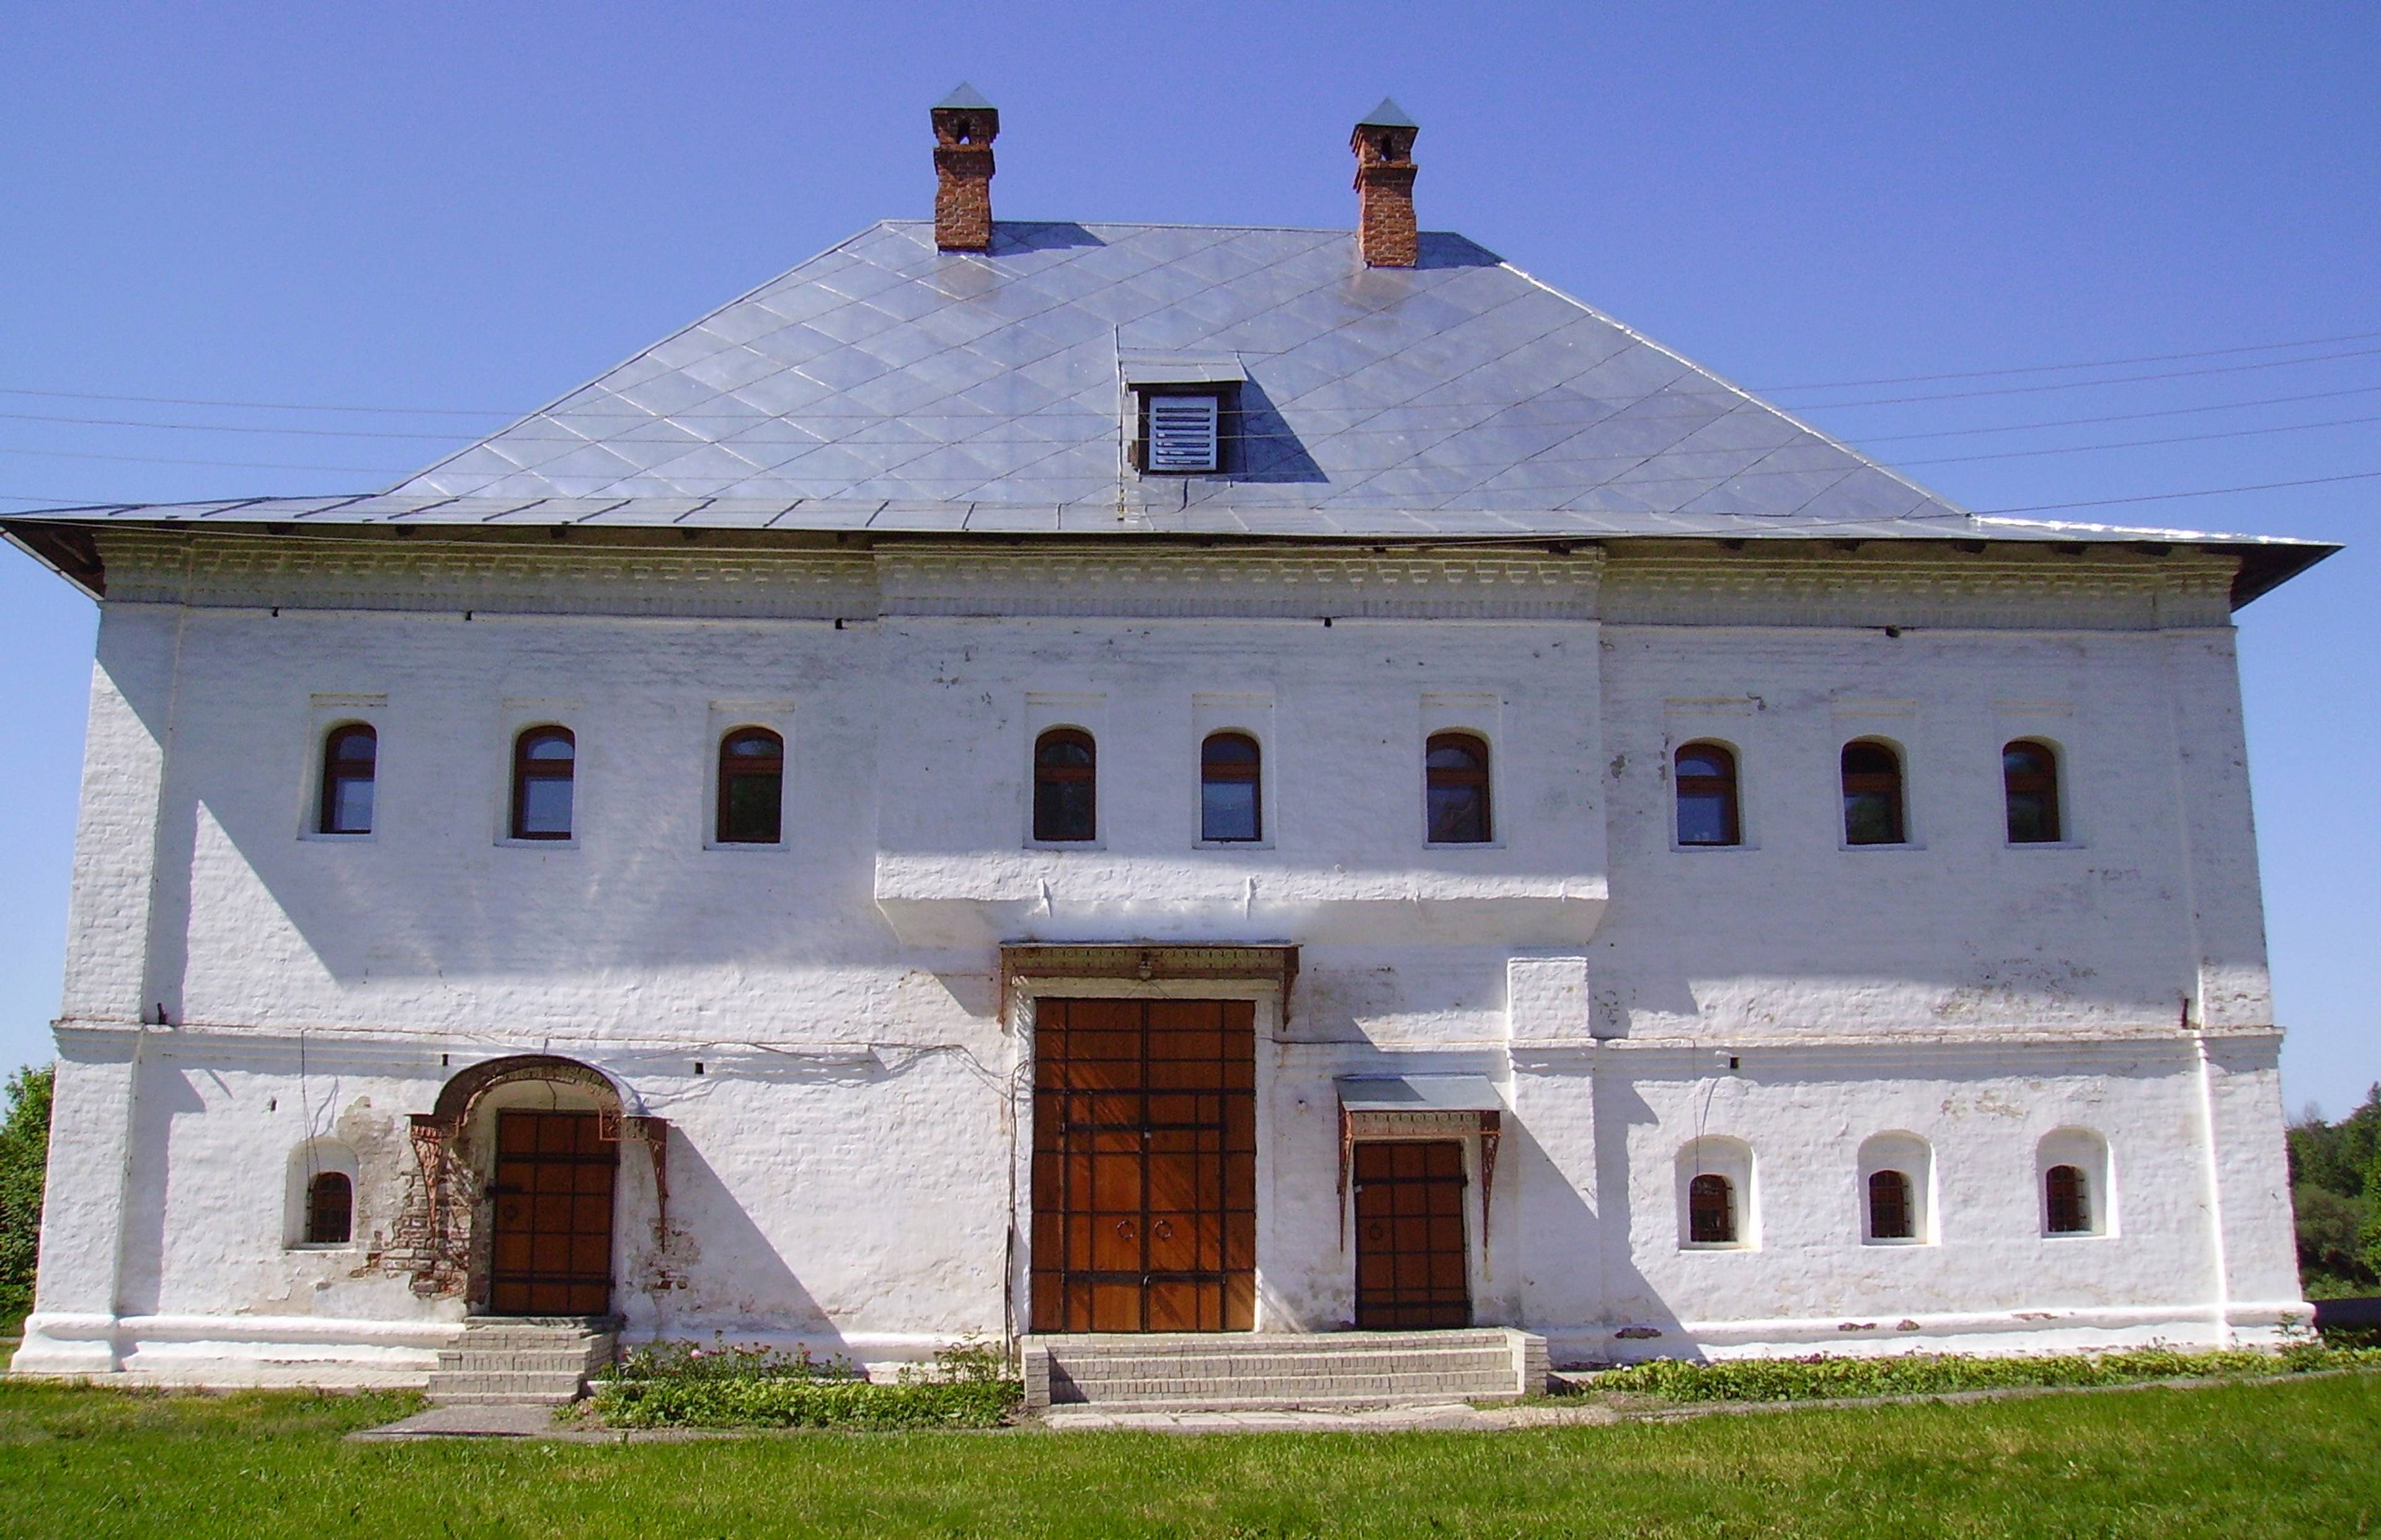 Kanonnikov House